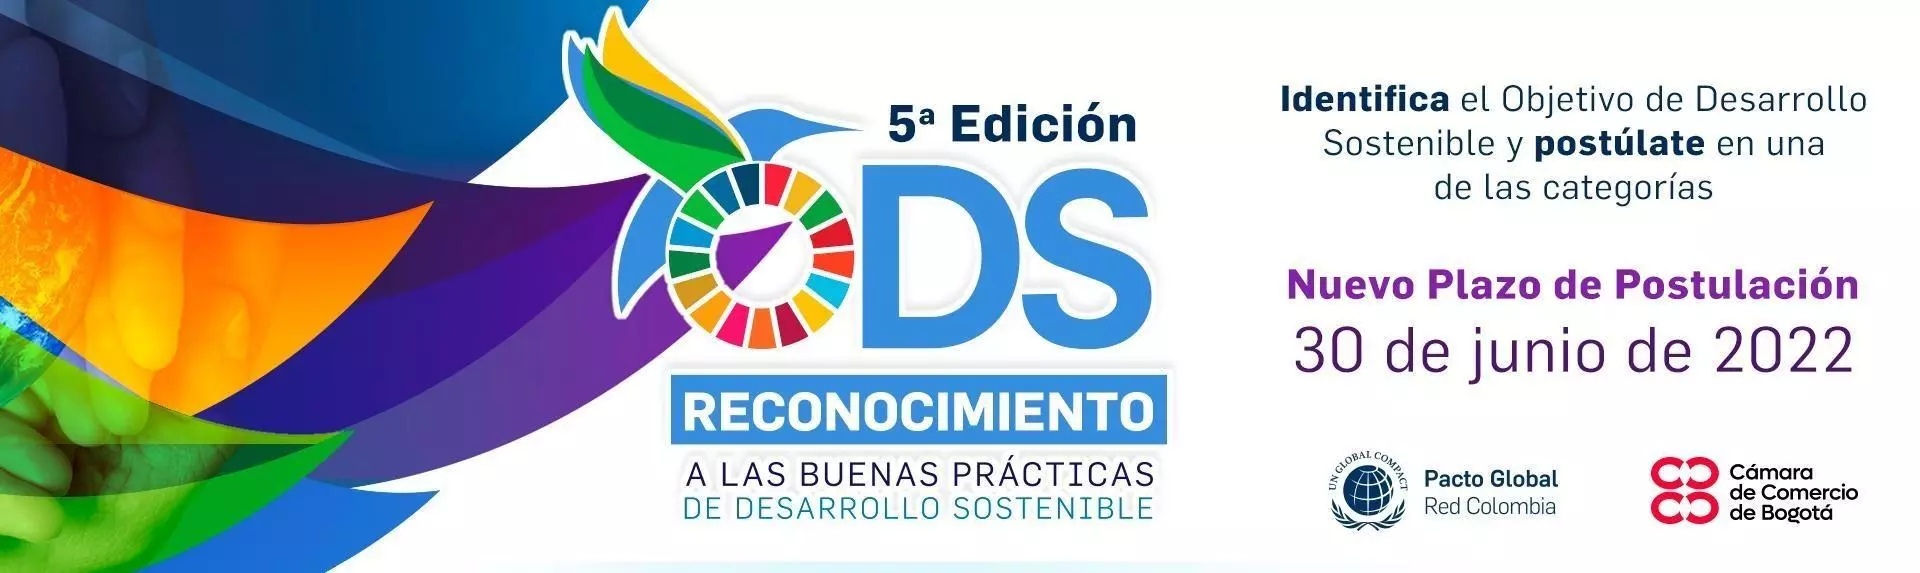 Reconocimiento a las Buenas Prácticas de Desarrollo Sostenible, 5ª Edición